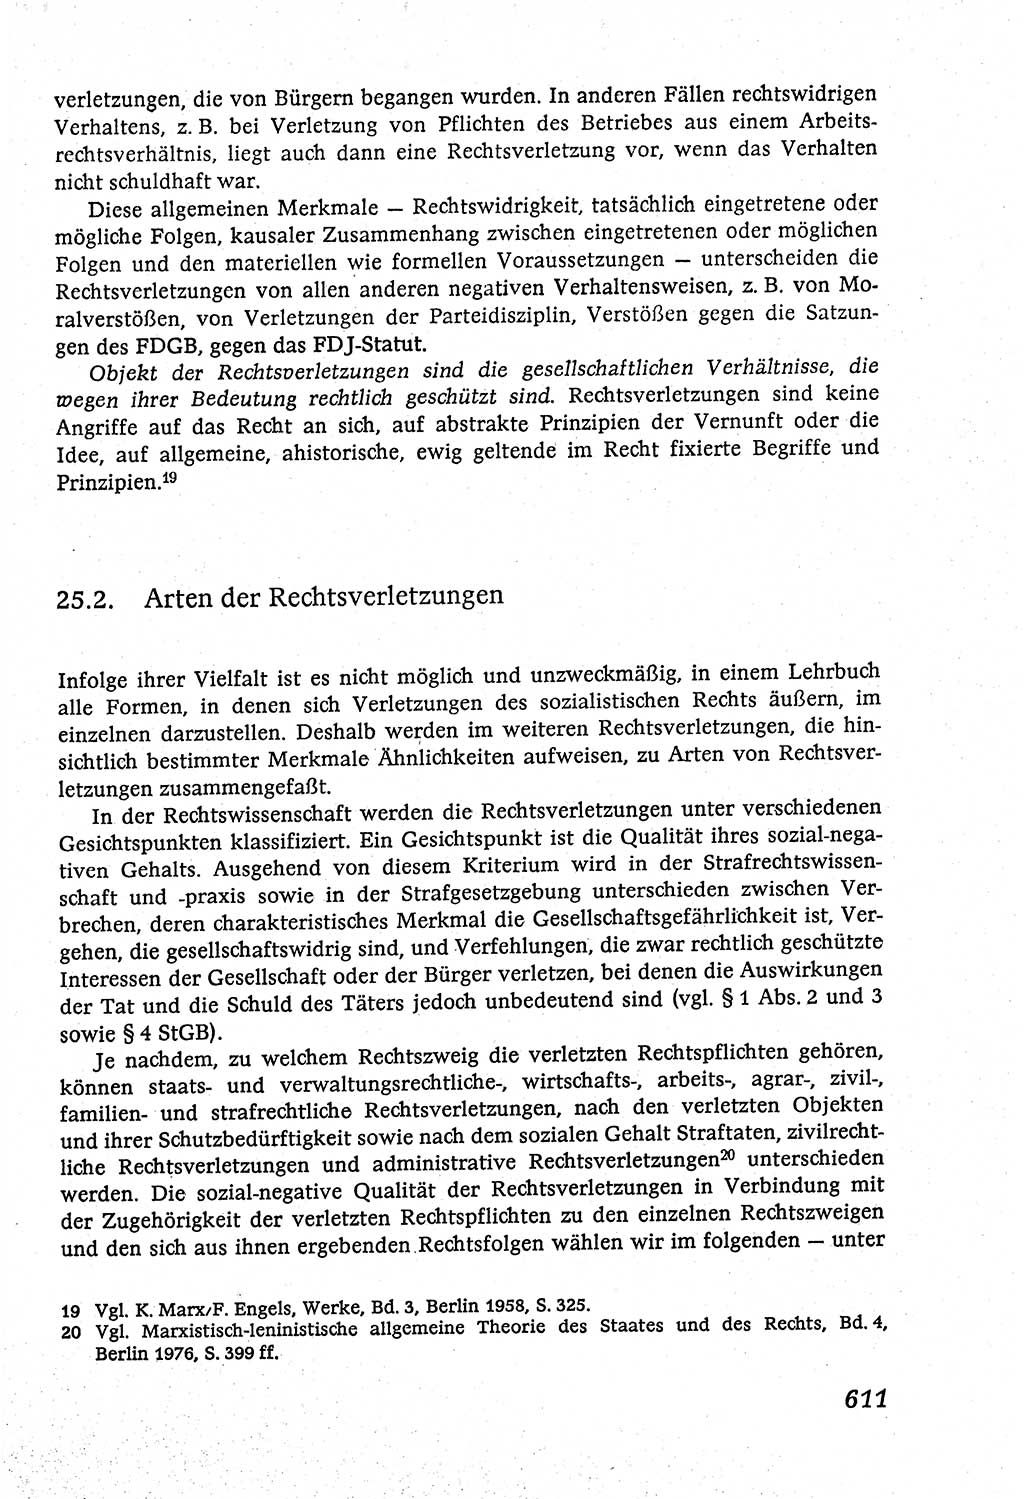 Marxistisch-leninistische (ML) Staats- und Rechtstheorie [Deutsche Demokratische Republik (DDR)], Lehrbuch 1980, Seite 611 (ML St.-R.-Th. DDR Lb. 1980, S. 611)